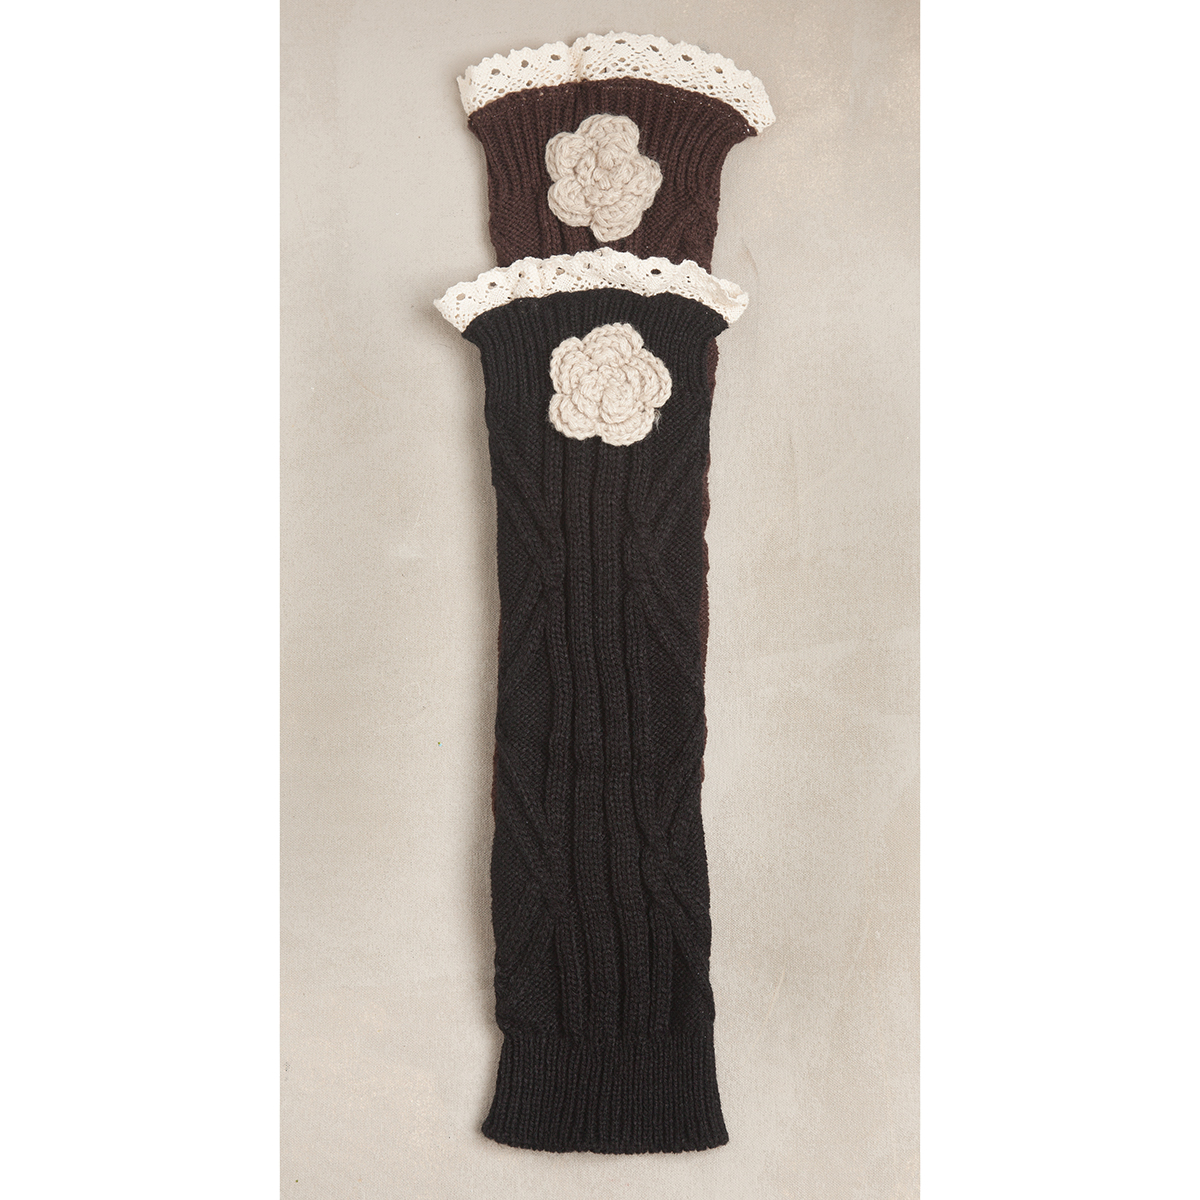 Black Crochet Flower Boot Cuff 50sp